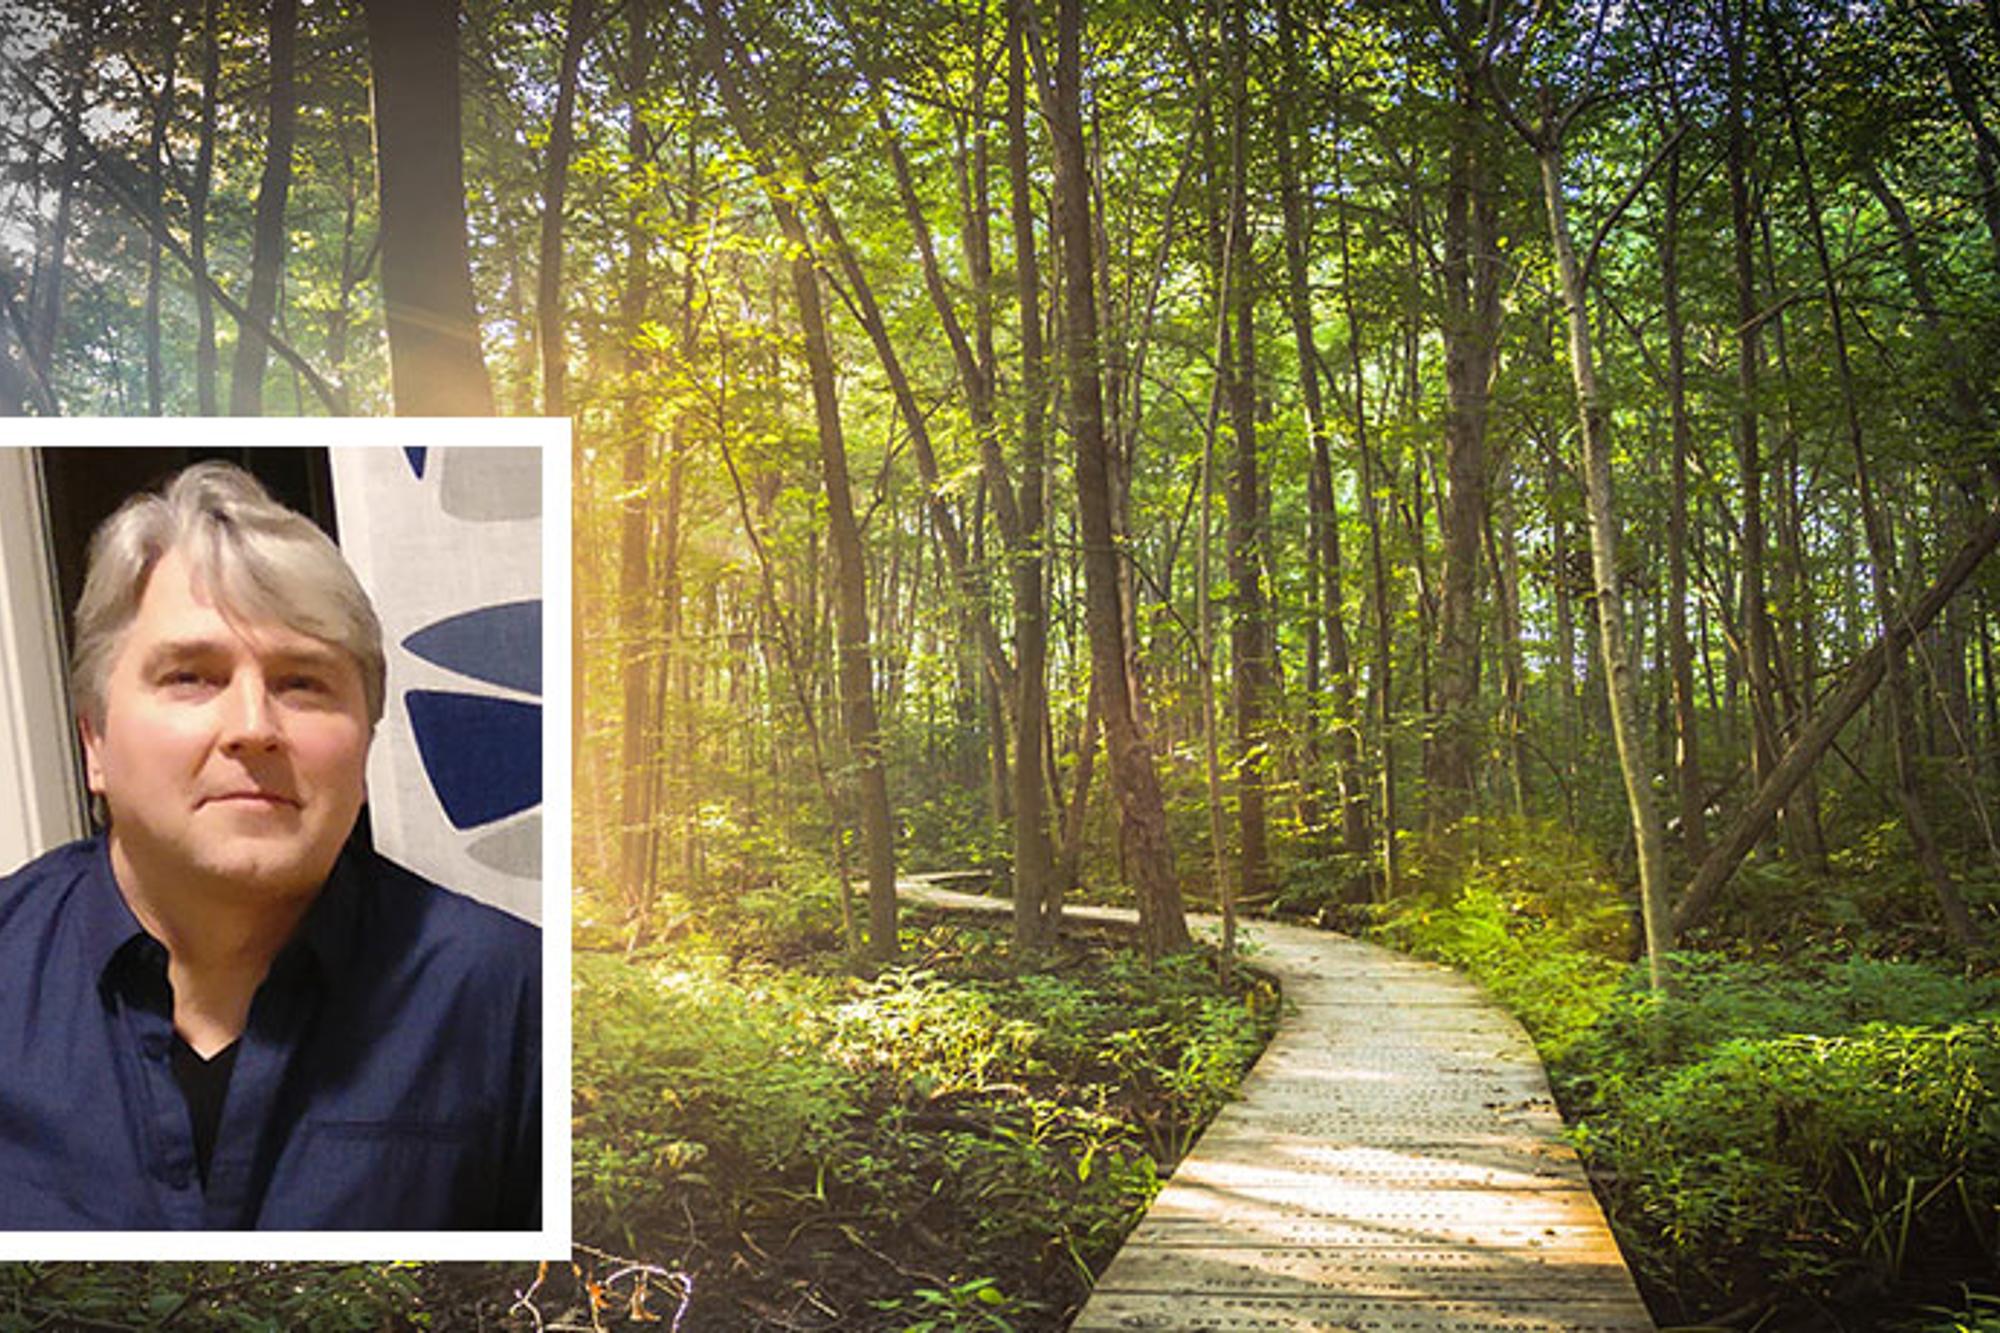 Till vänster: Porträttbild av Roger Windahl. Till höger: En stig av träplankor i en skog. Längs med stigen står det trä, och solstrålar lyser igenom trädkronorna.